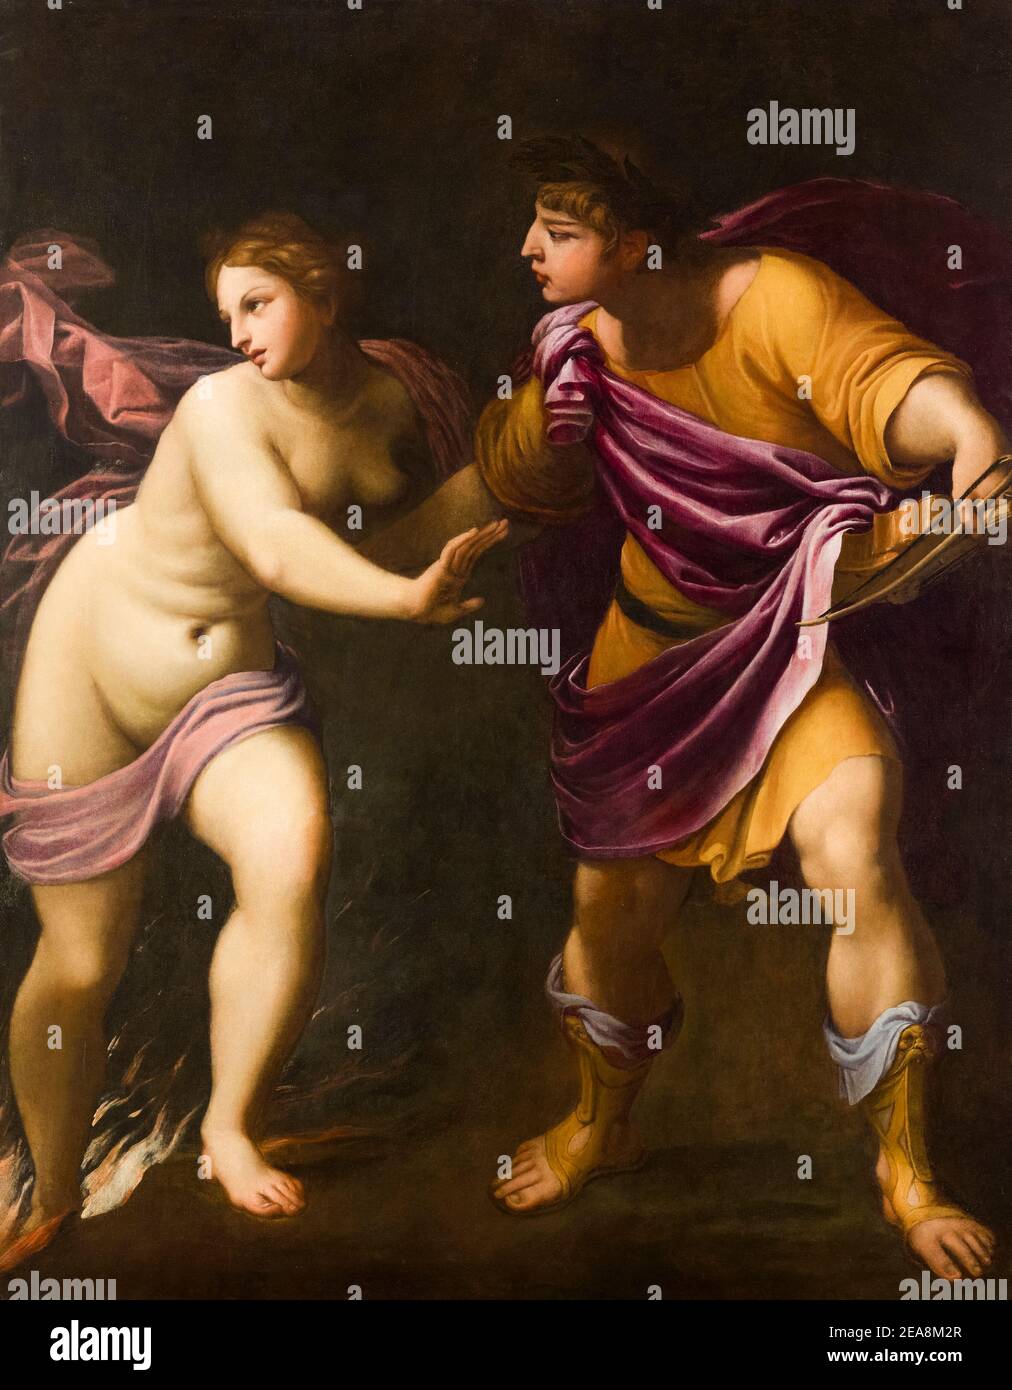 Guido reni, Orfeo ed Euridice, pittura, 1596-1597 Foto Stock